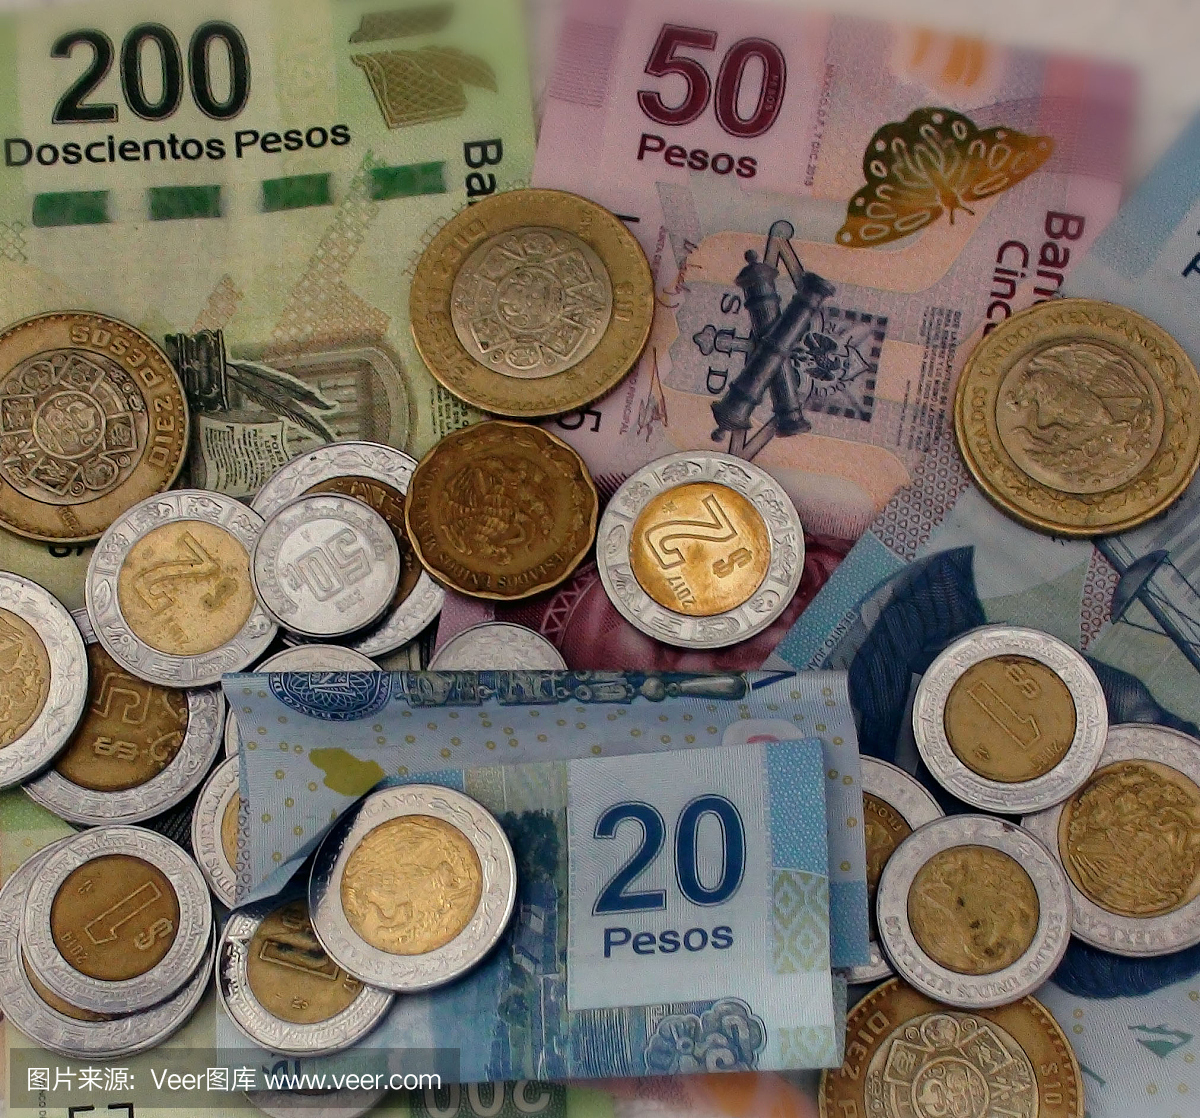 墨西哥硬币,墨西哥钞票,墨西哥比索,比索钢崩